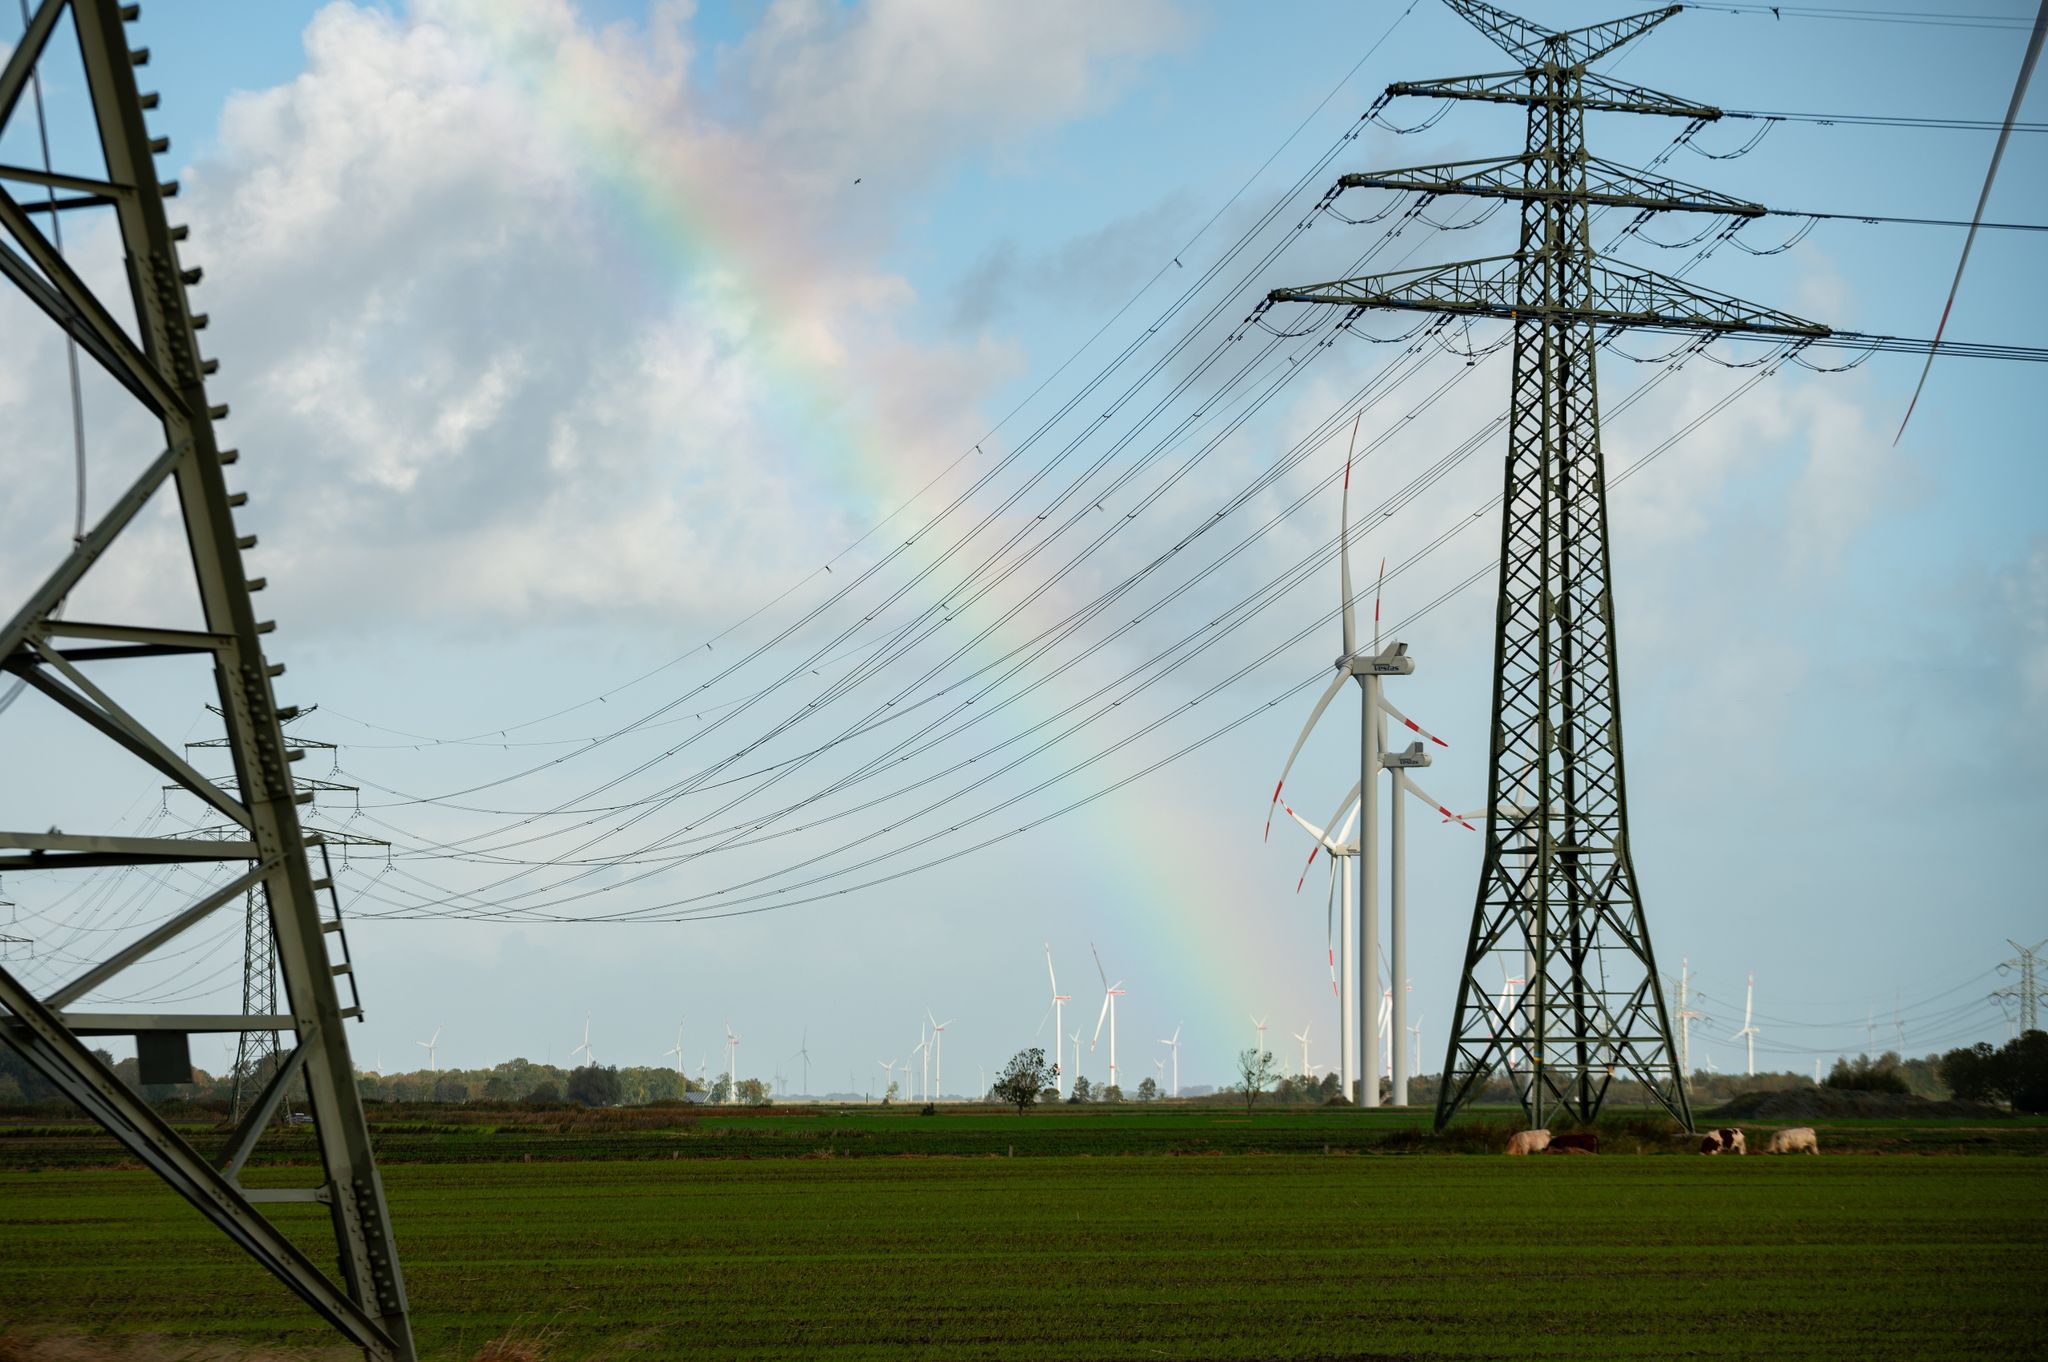 Ein Regenbogen zwischen Hochspannungsmasten und Windrädern in Schleswig-Holstein. Die für die Energiewende wichtige Westküstenleitung von der dänischen Grenze bis Brunsbüttel hat ihren Betrieb aufgenommen.